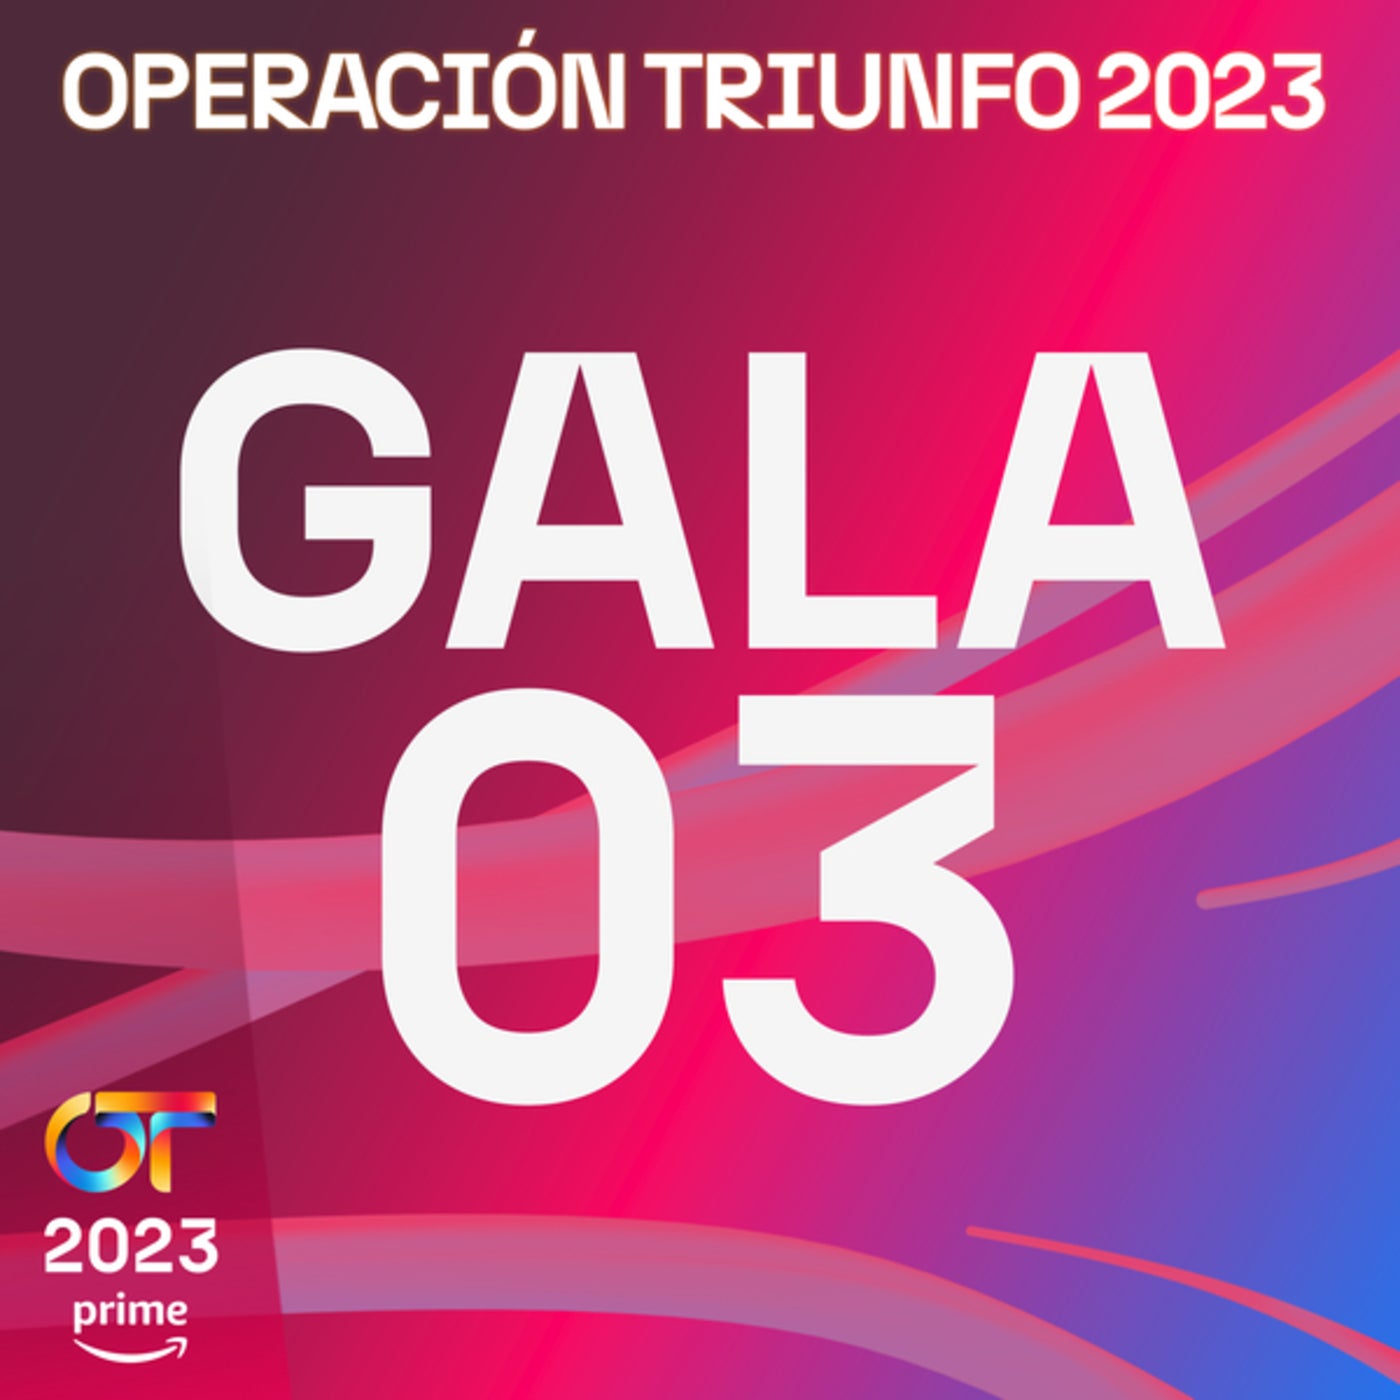 OT Gala Final (Operación Triunfo 2023) by Chenoa, Operación